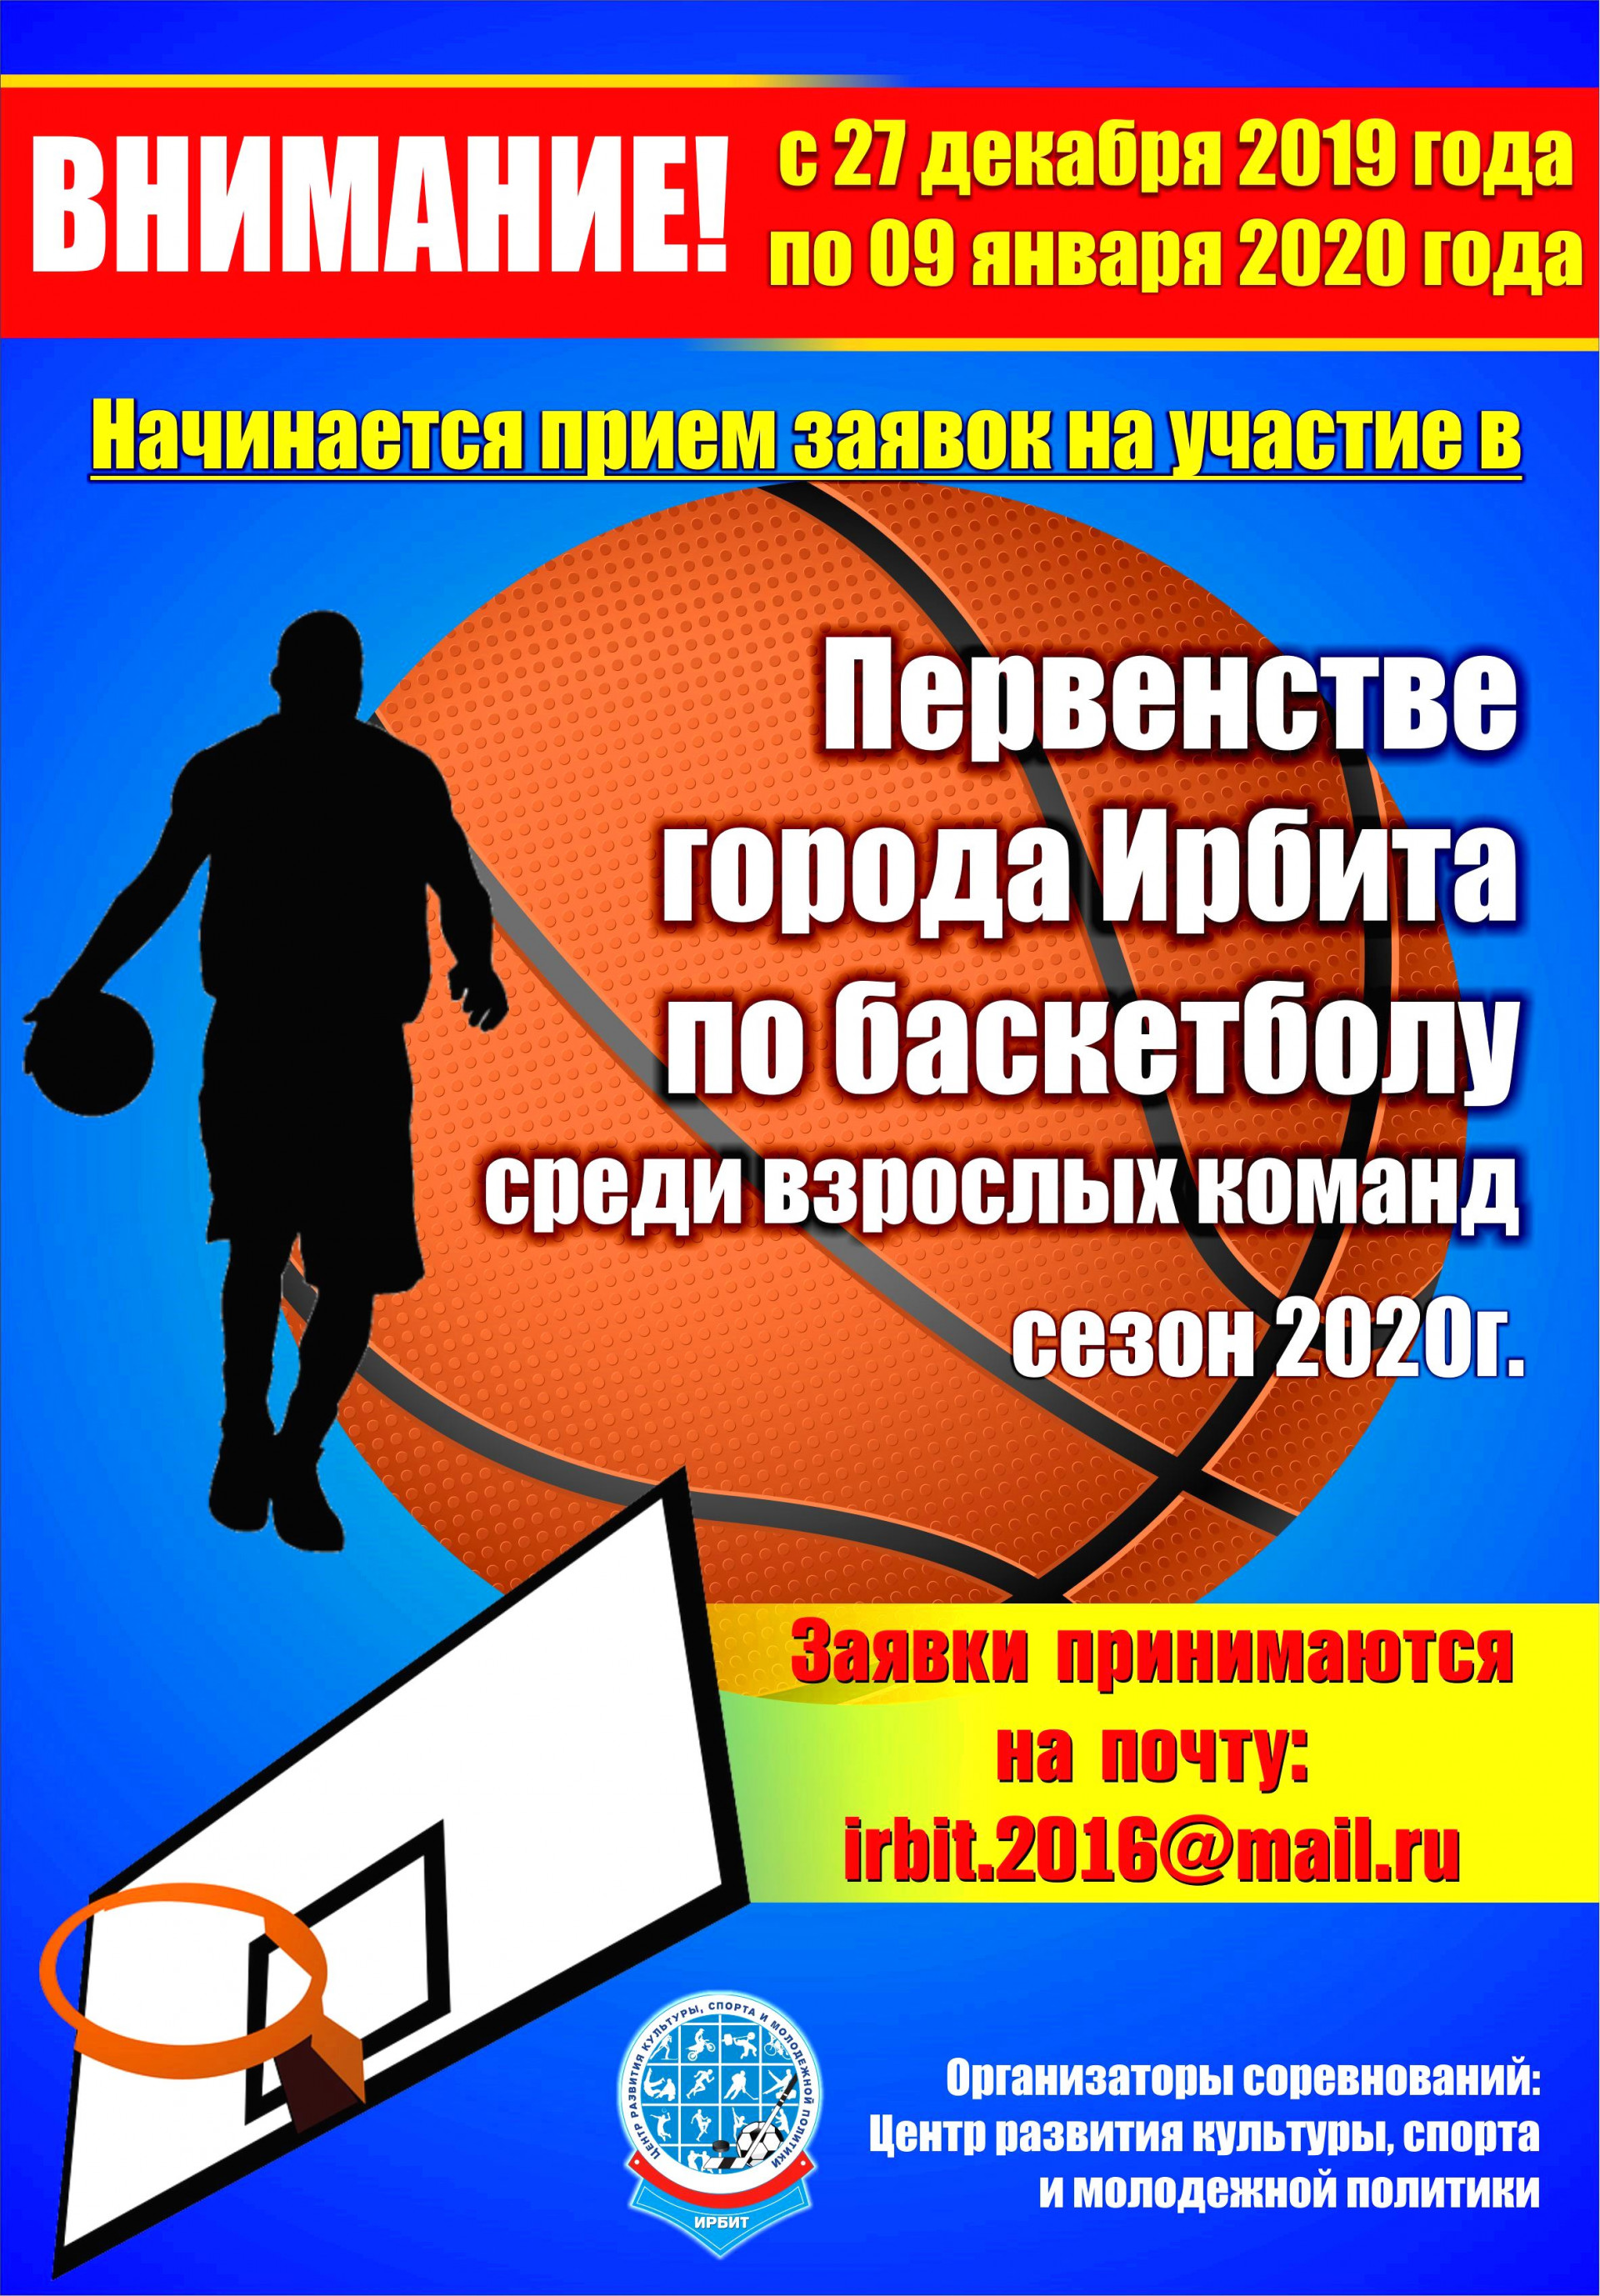 Начинается прием заявок на участие в Первенстве города Ирбита по баскетболу среди взрослых команд 2020